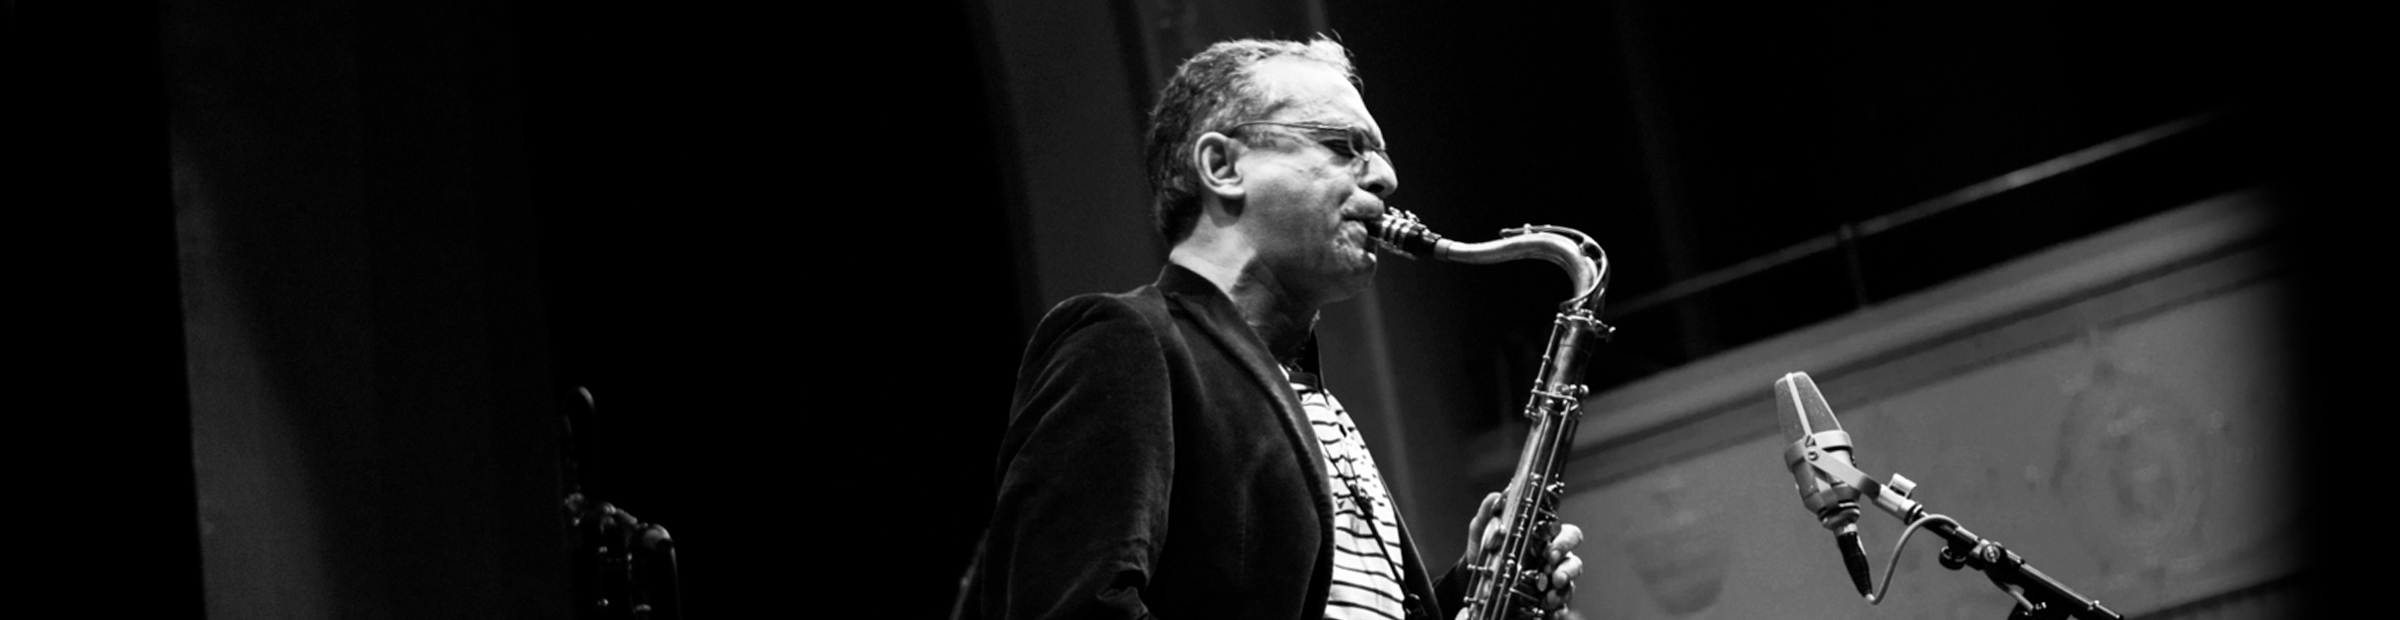 Ivo Perelman, ás brasileiro do free jazz americano lança seis discos de uma vez